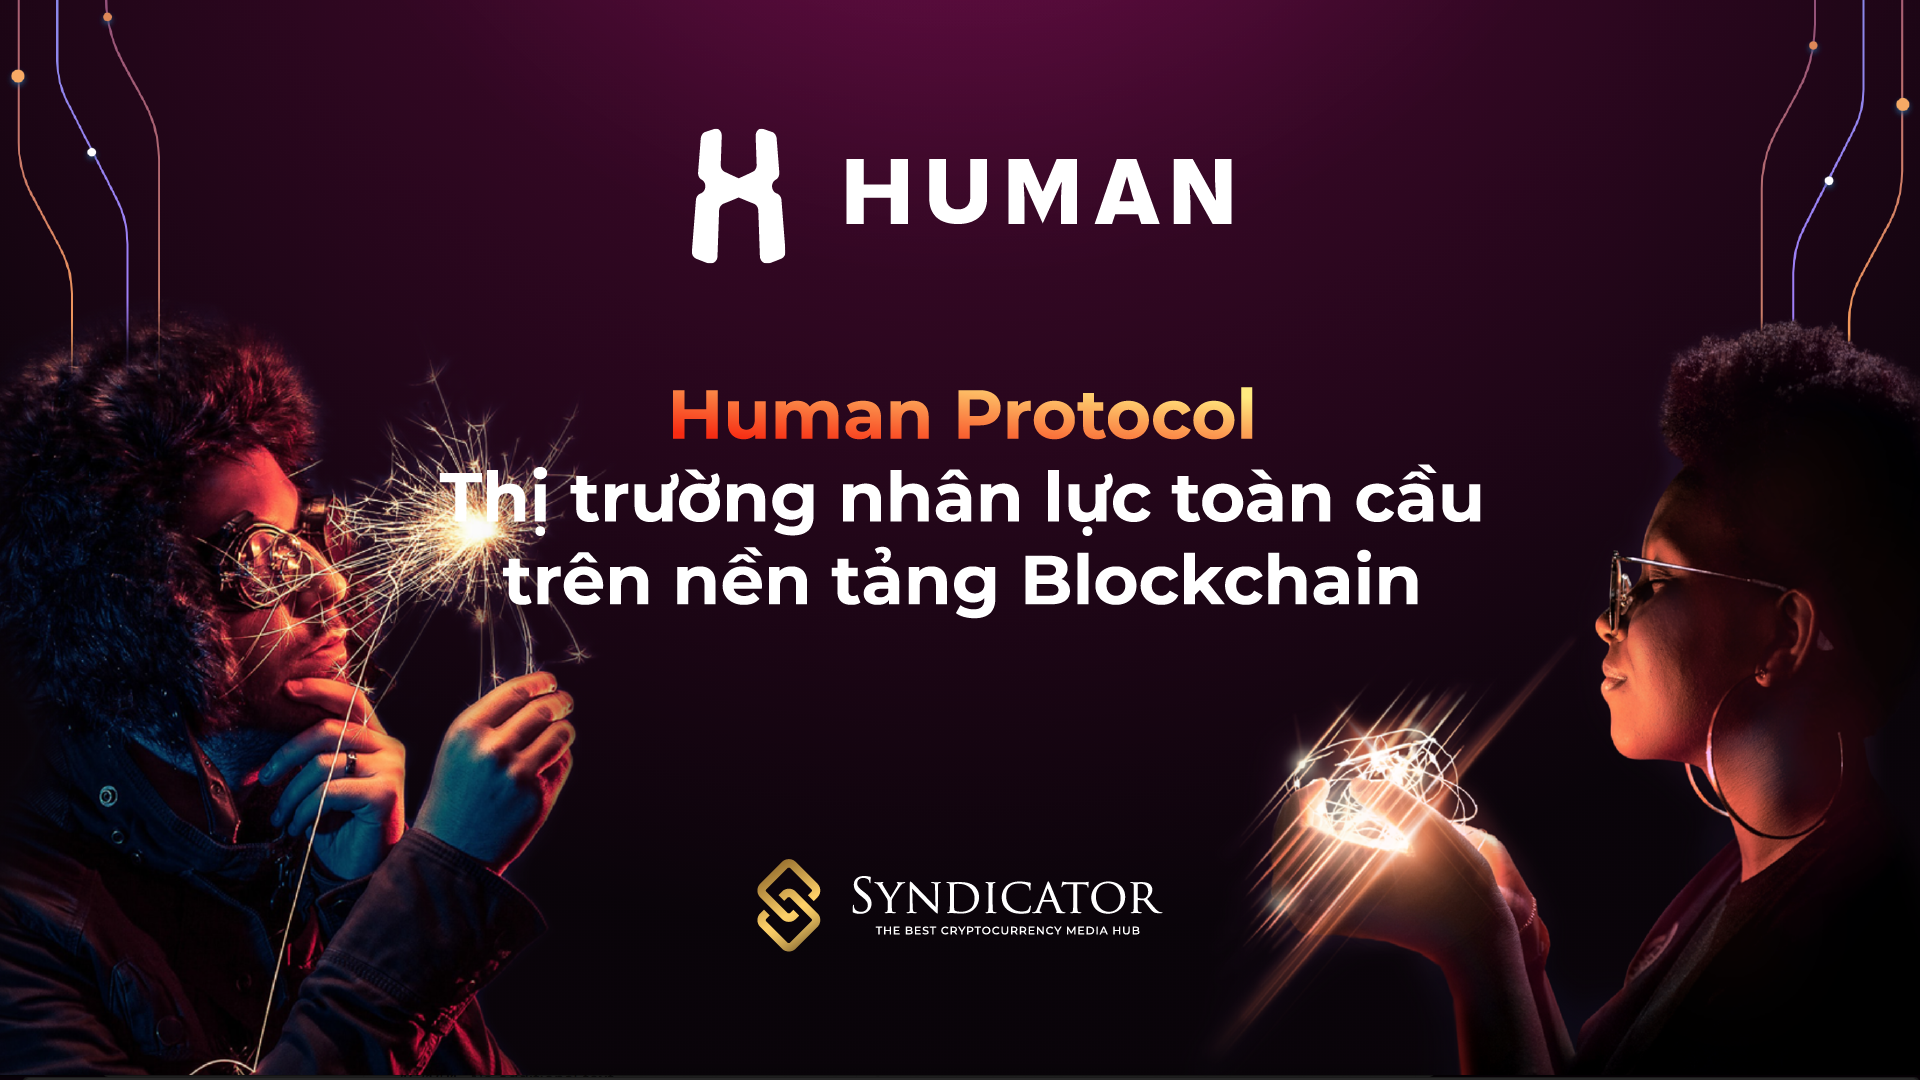 Human Protocol - Thị trường nhân lực toàn cầu trên nền tảng Blockchain - Syndicator